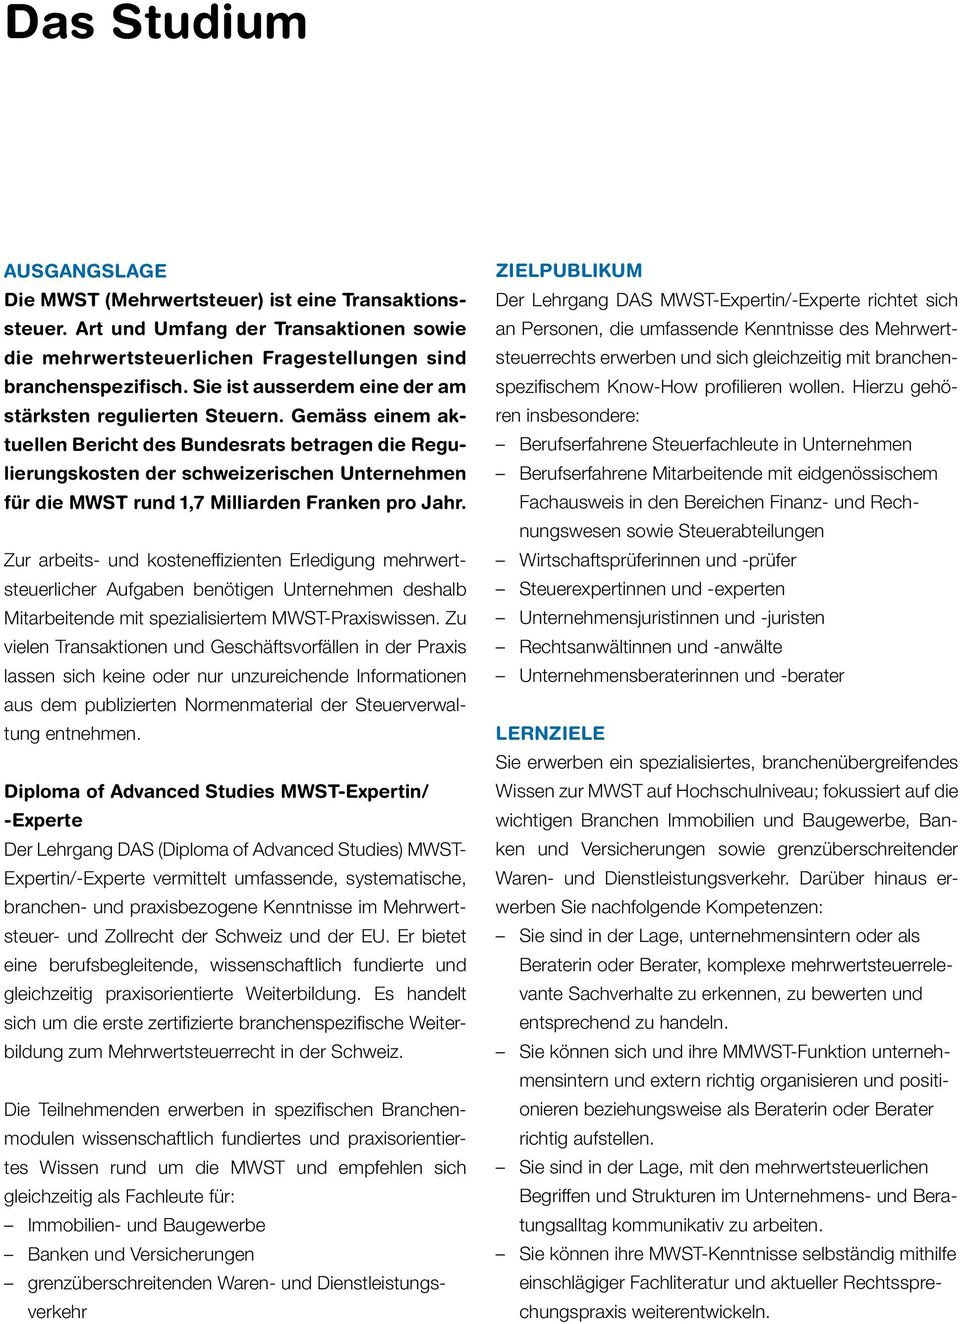 Gemäss einem aktuellen Bericht des Bundesrats betragen die Regulierungskosten der schweizerischen Unternehmen für die MWST rund 1,7 Milliarden Franken pro Jahr.